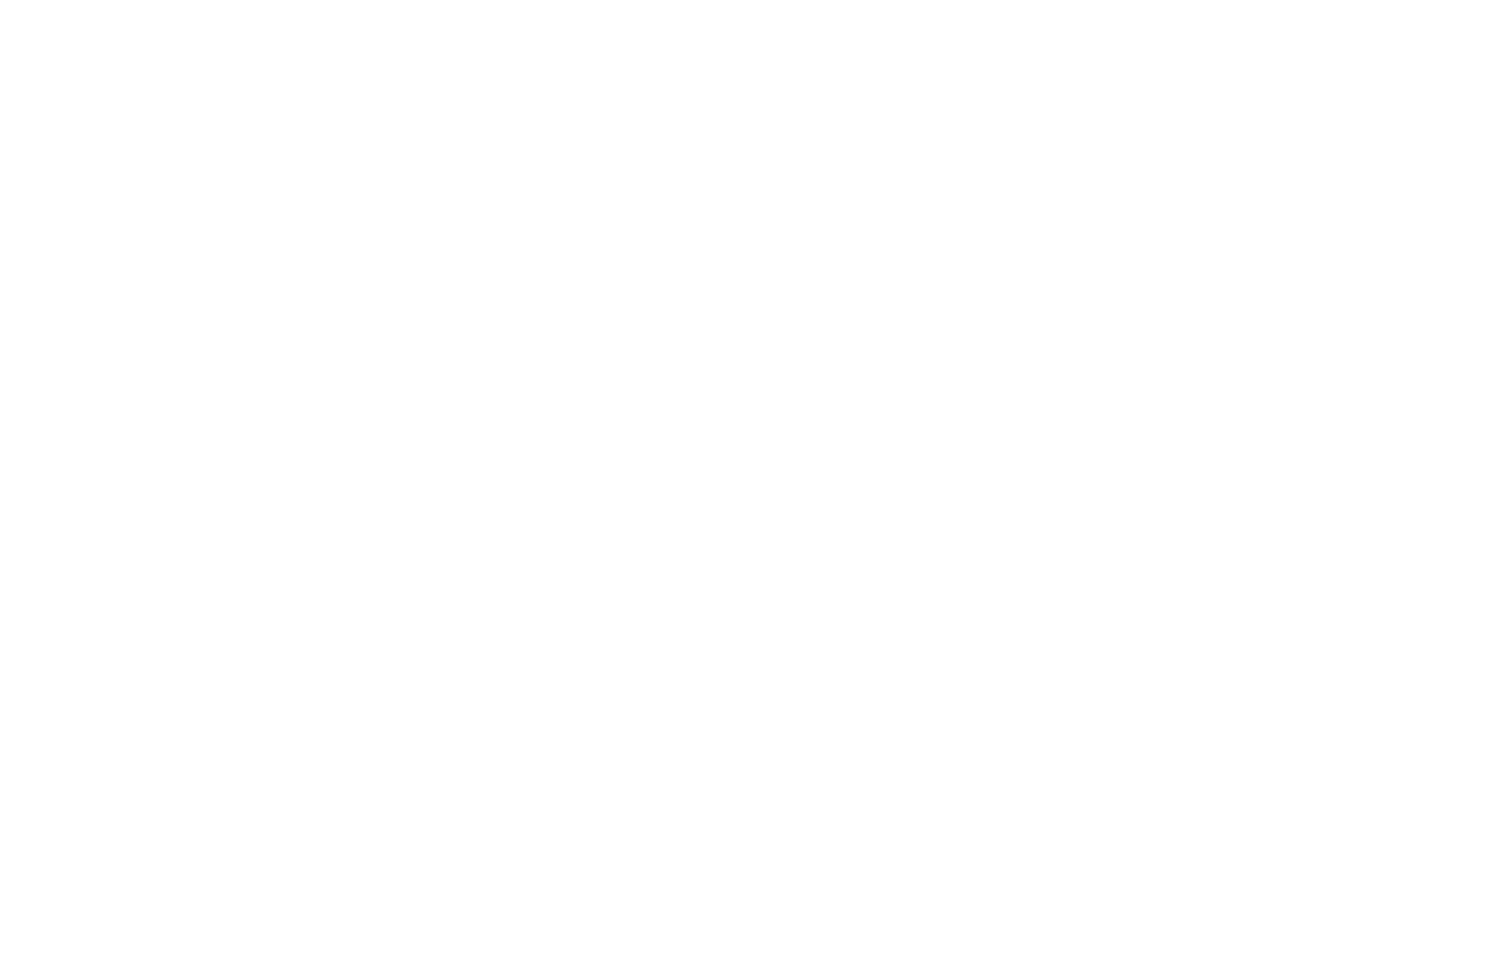 Van Django